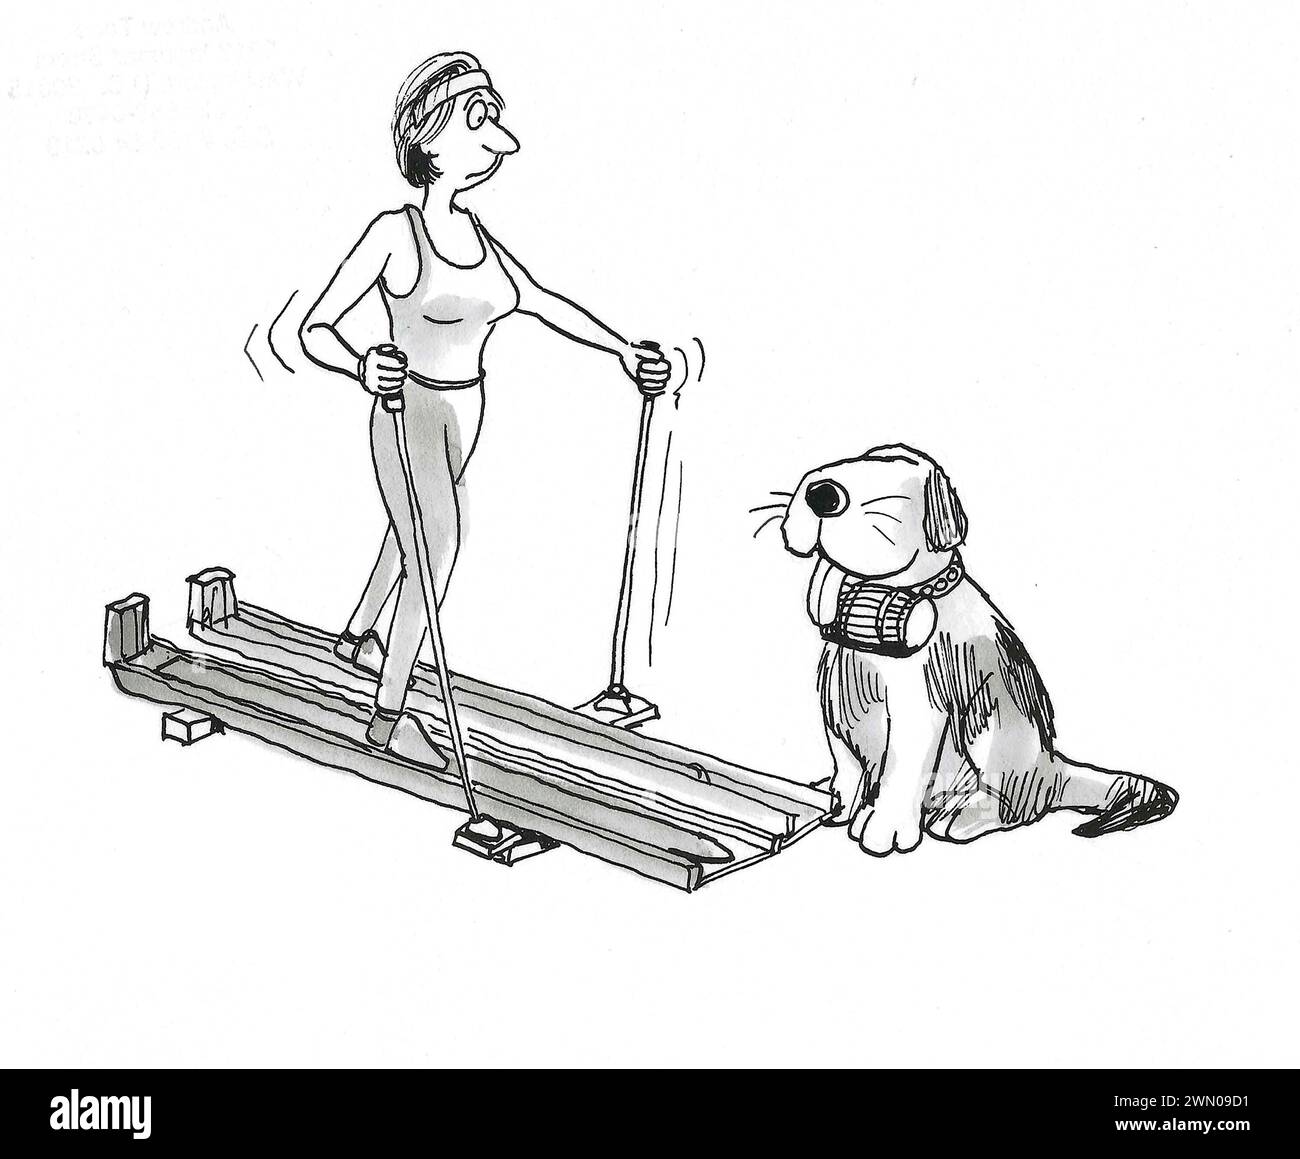 Dessin animé BW d'une femme glissant sur des skis d'intérieur avec un chien de montagne prêt à aider si nécessaire. Banque D'Images